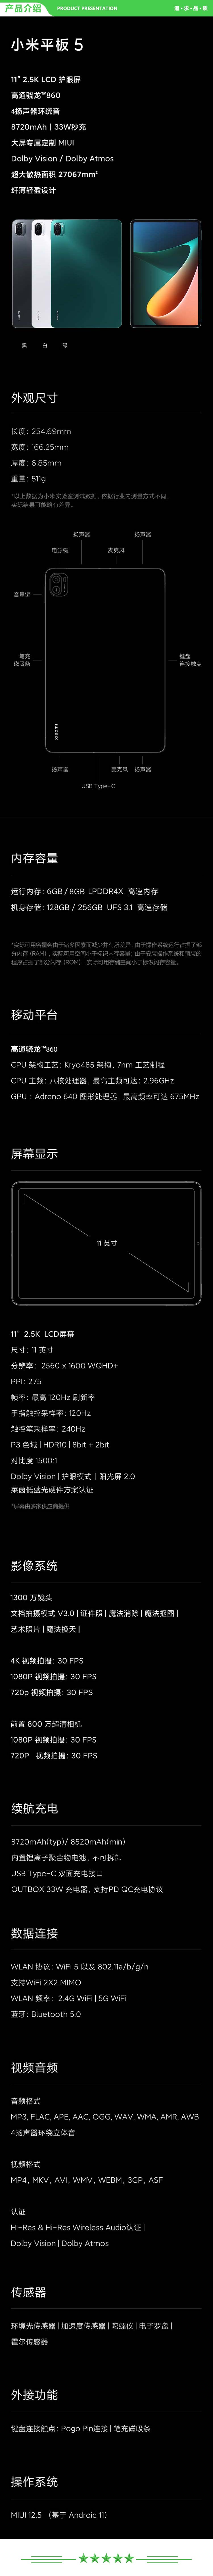 小米 xiaomi 平板5 平板电脑（11英寸2.5K高清 120Hz 骁龙860 8G+256GB 33W快充 杜比影音娱乐办公 黑色）+ 键盘套装.jpg